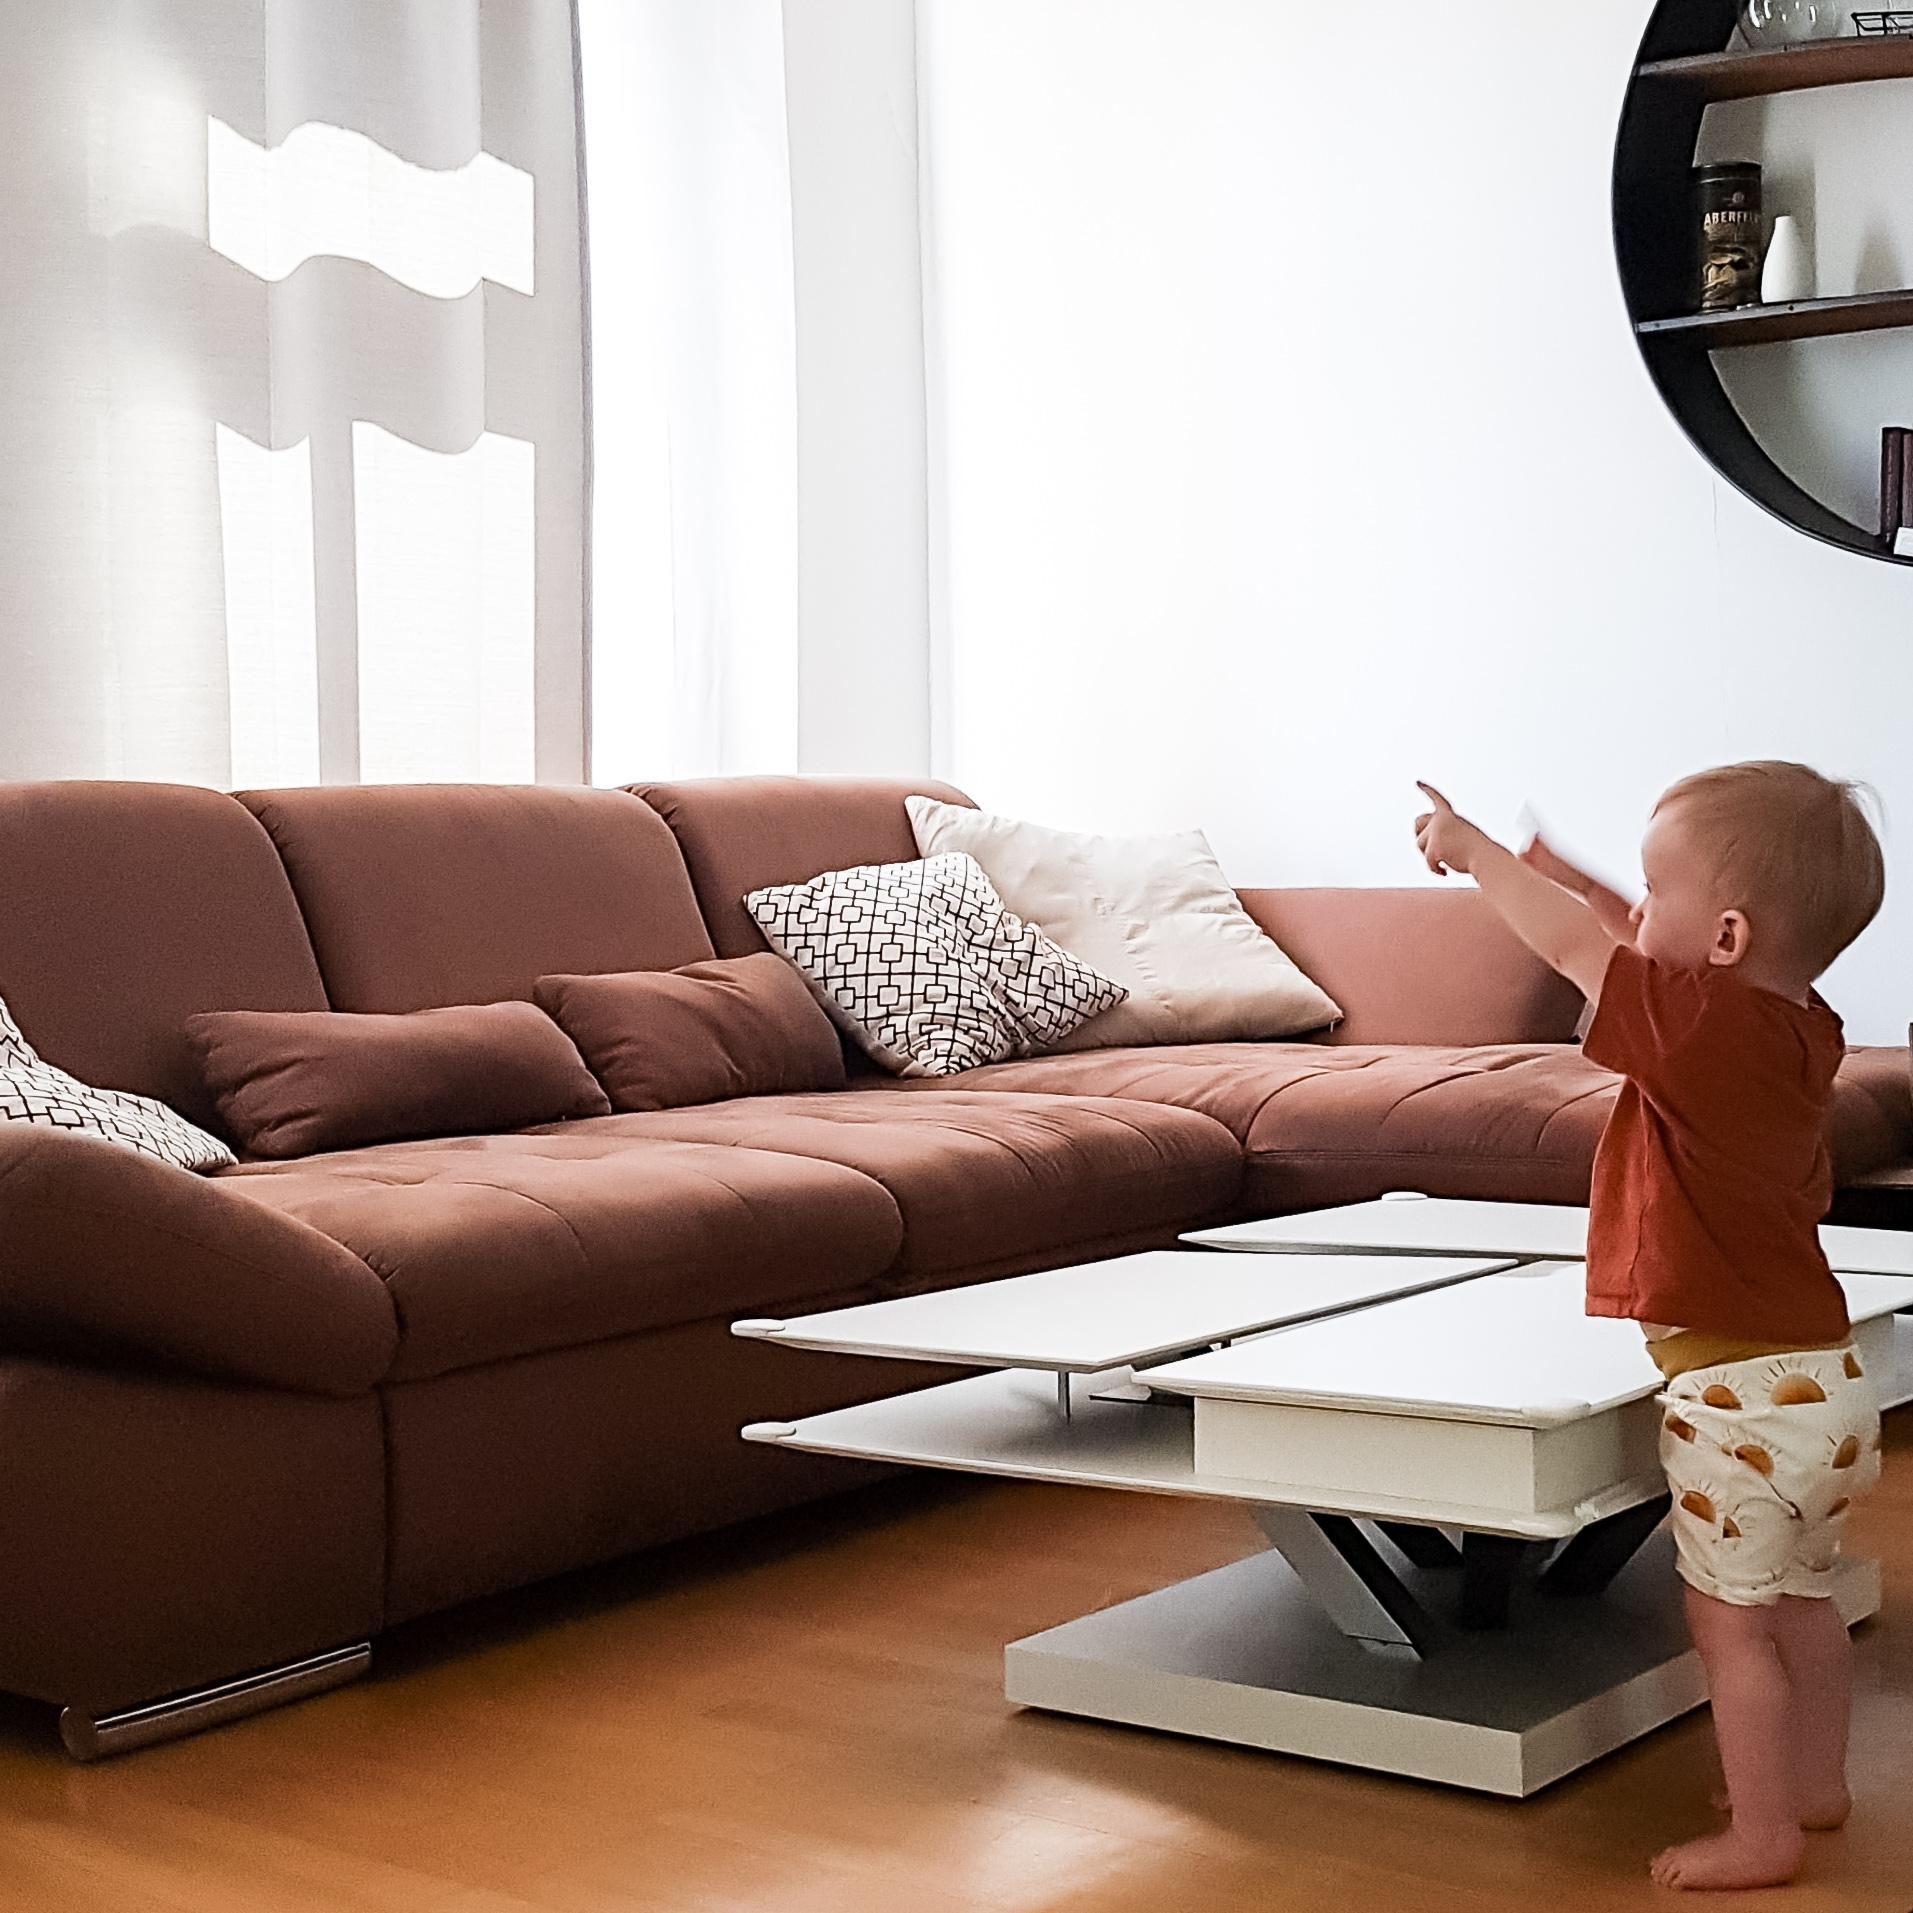 Die hübscheste #wohnzimmergestaltung ist er. 💛
#livingchallenge #couchmagazin